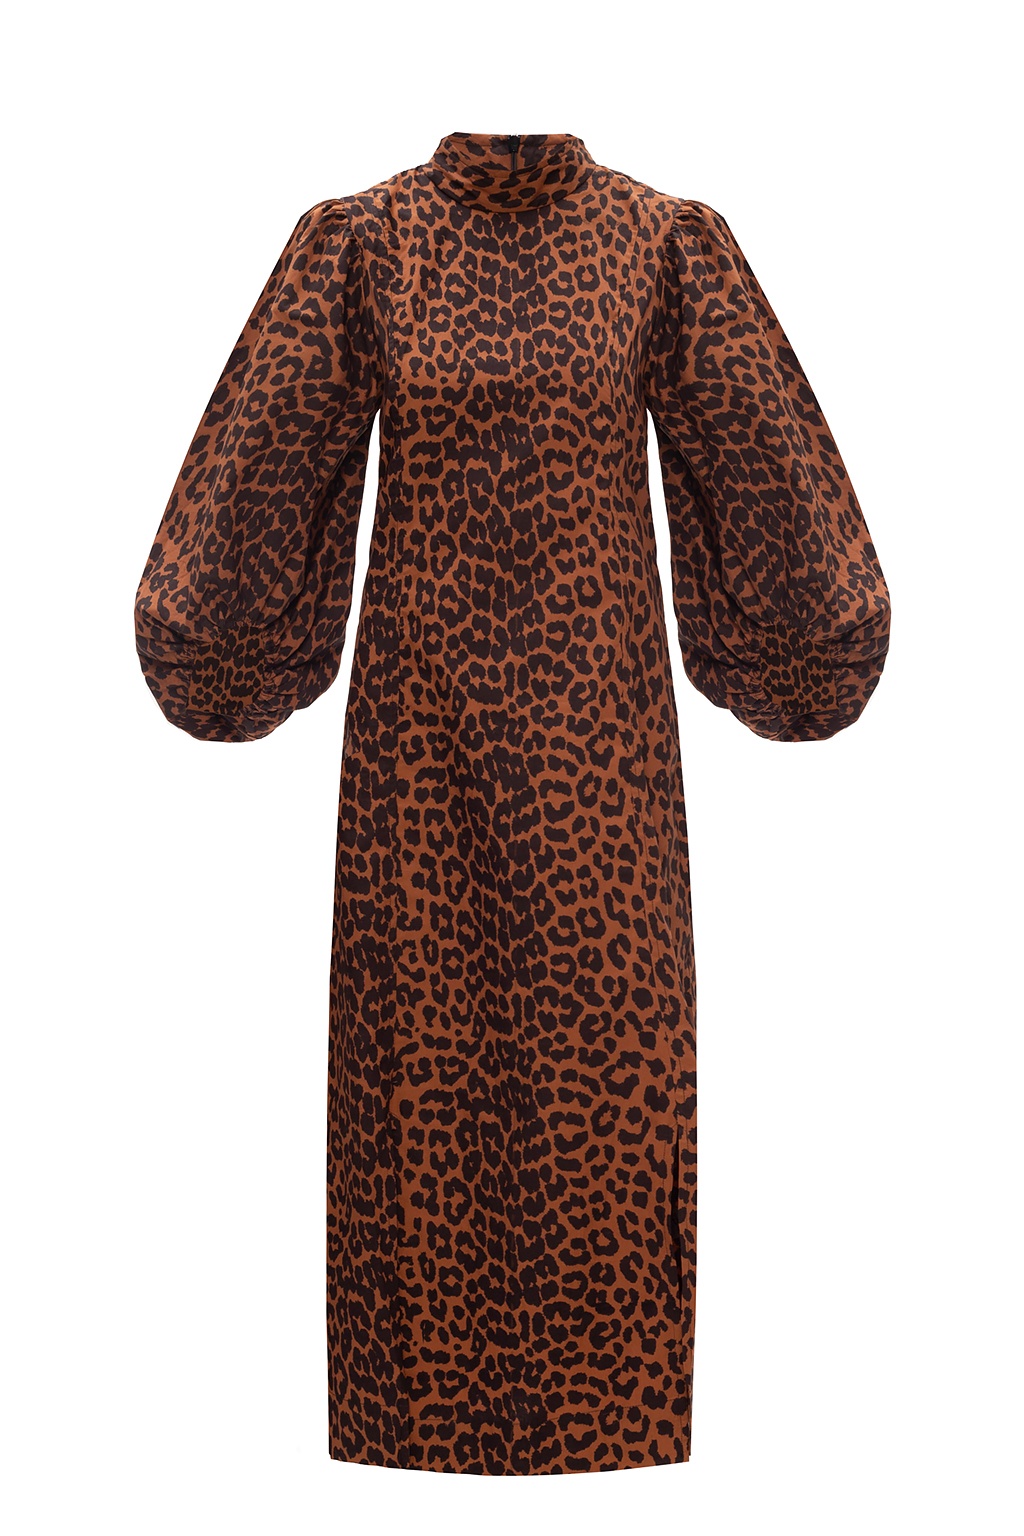 GANNI Tiger-print tiered organic cotton-poplin shirt dress